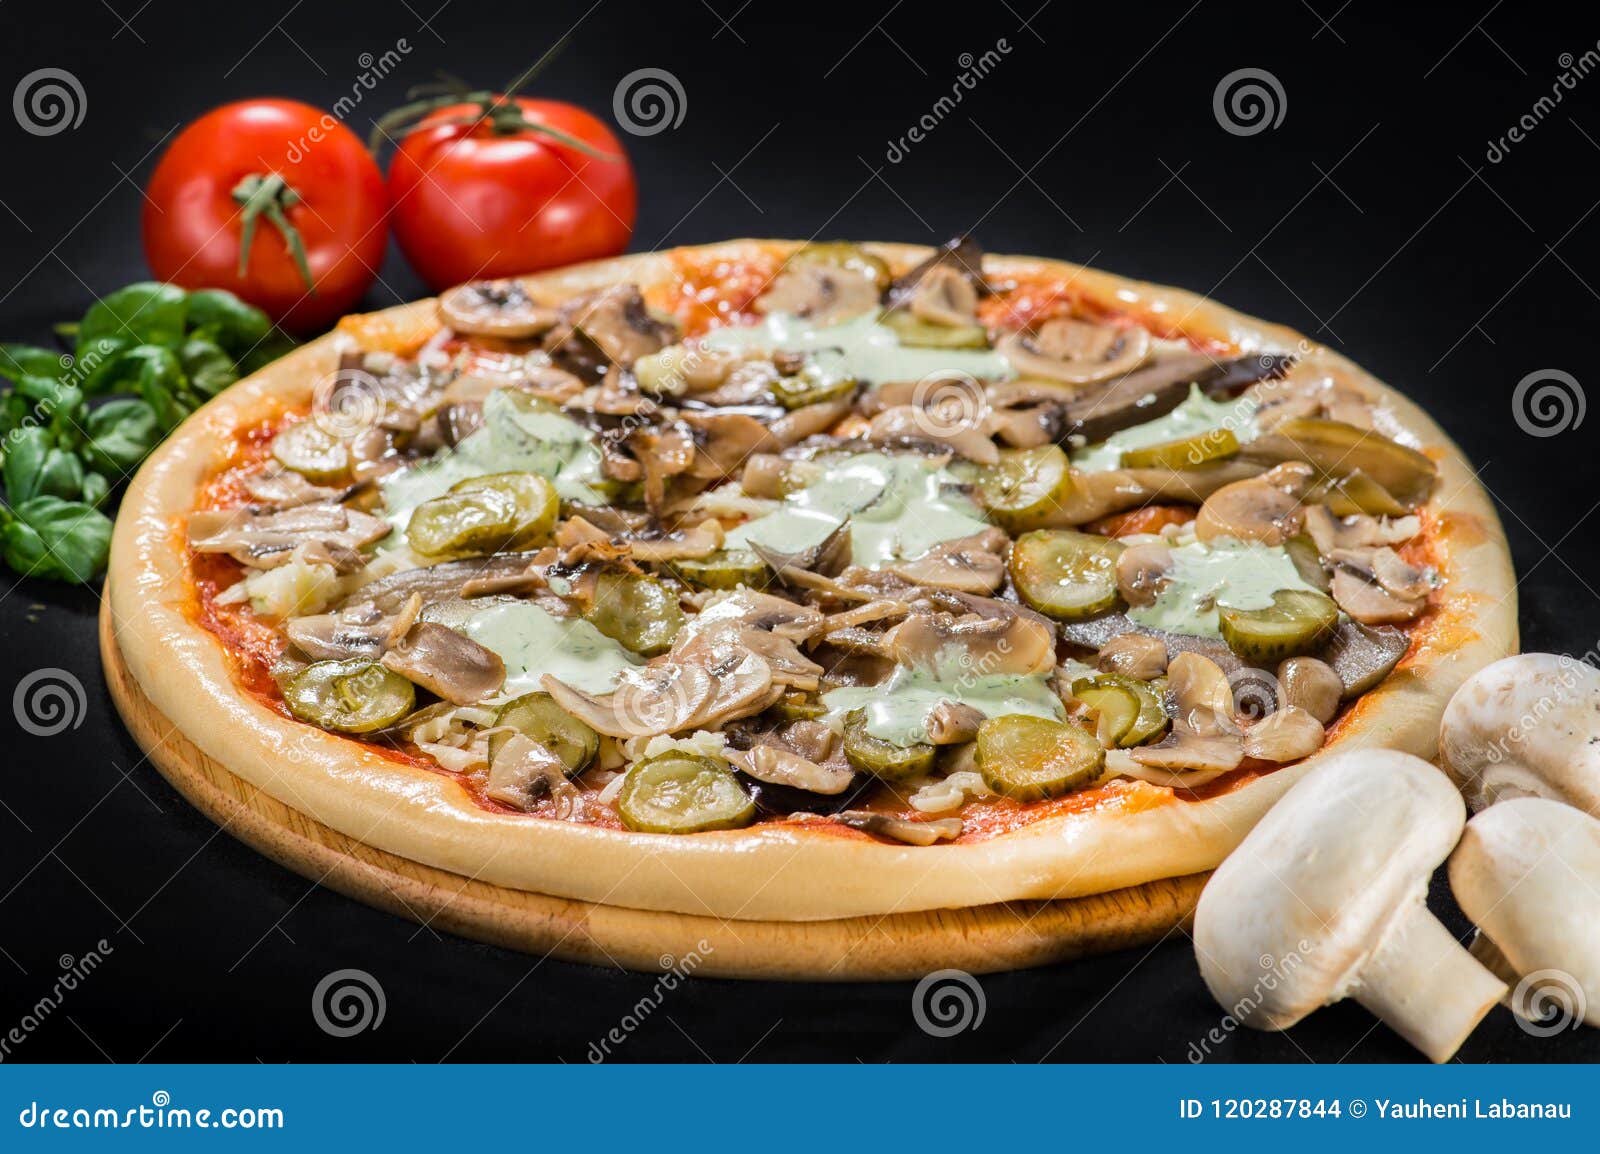 грибная пицца с колбасой фото 74